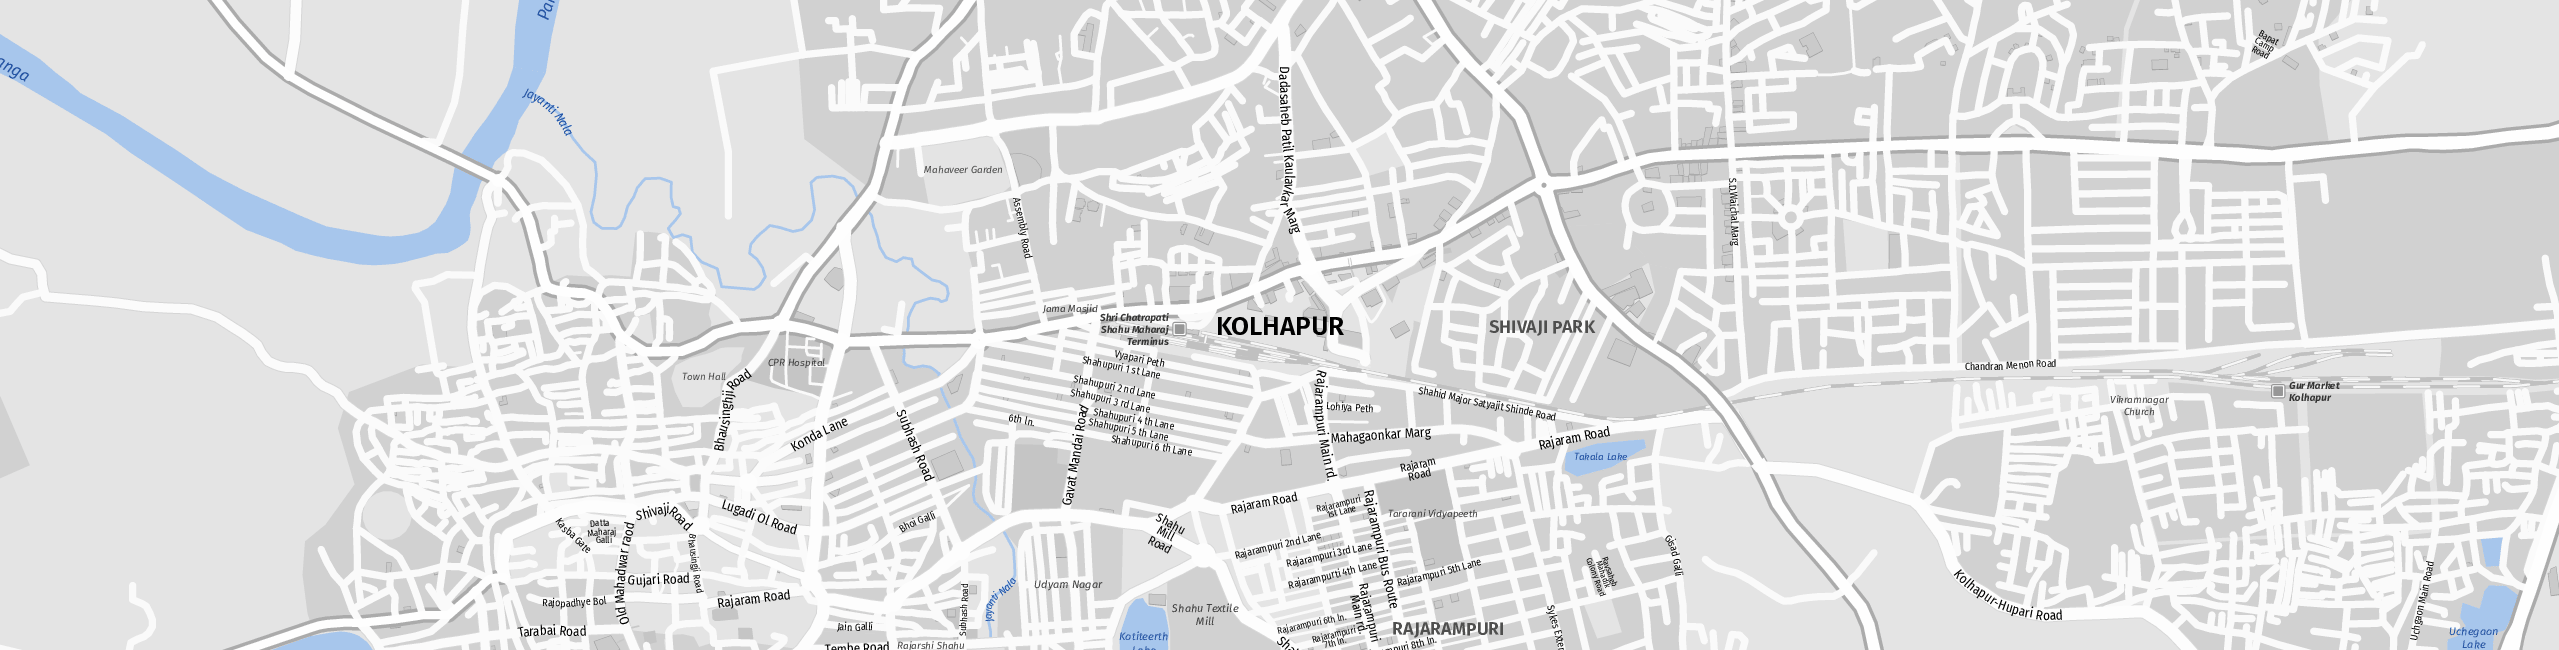 Stadtplan Kolhapur zum Downloaden.